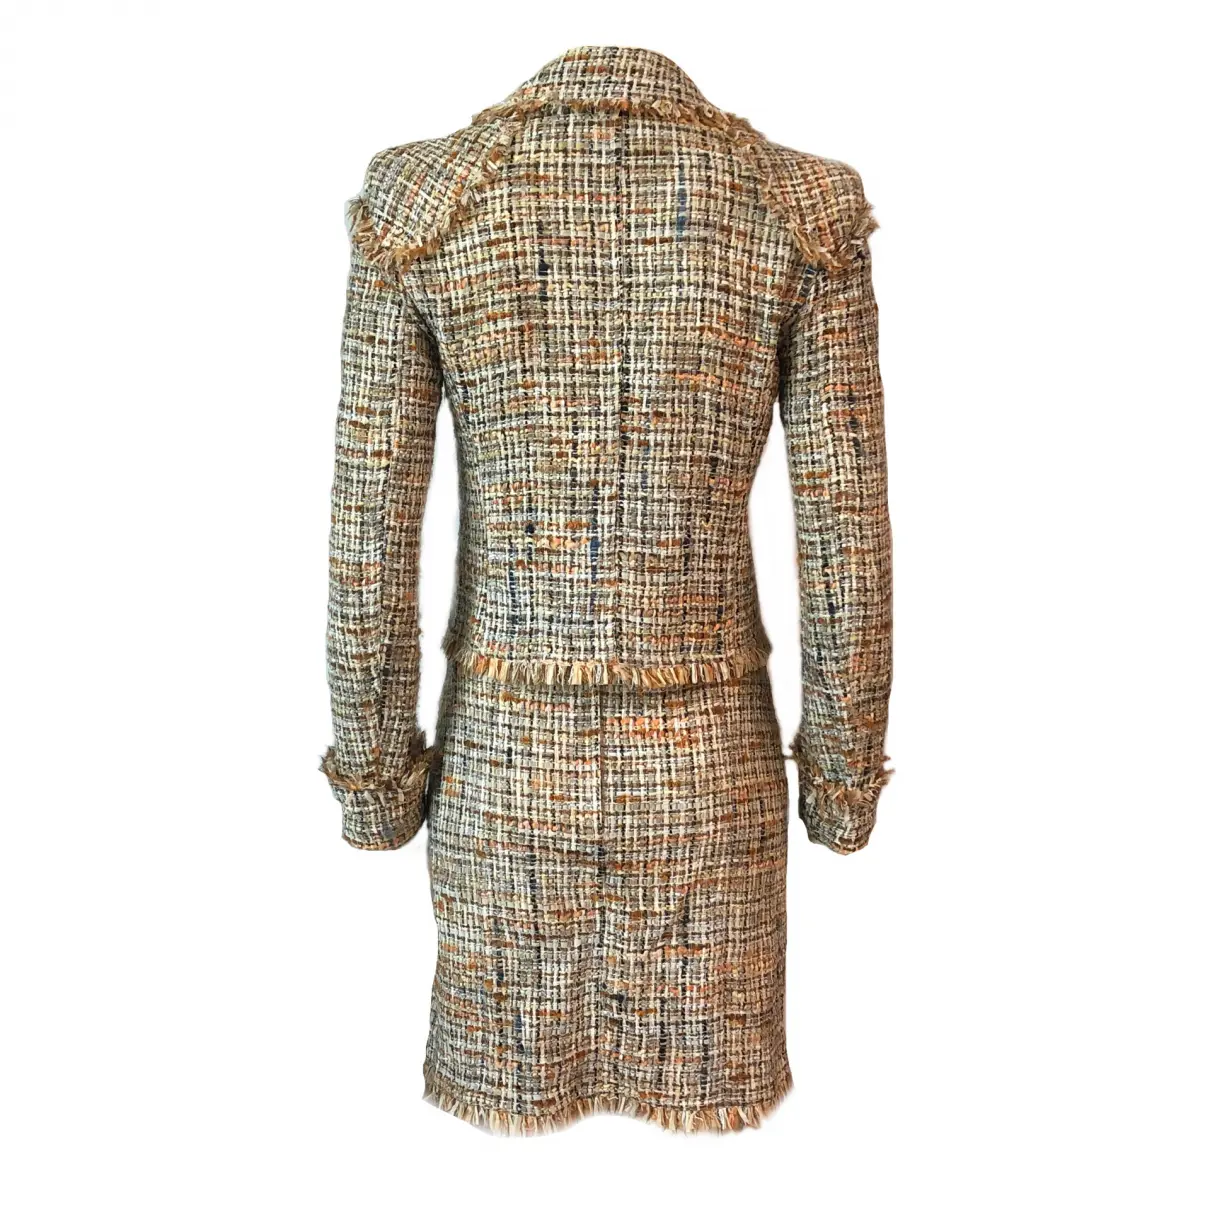 Buy Chanel Tweed suit jacket online - Vintage